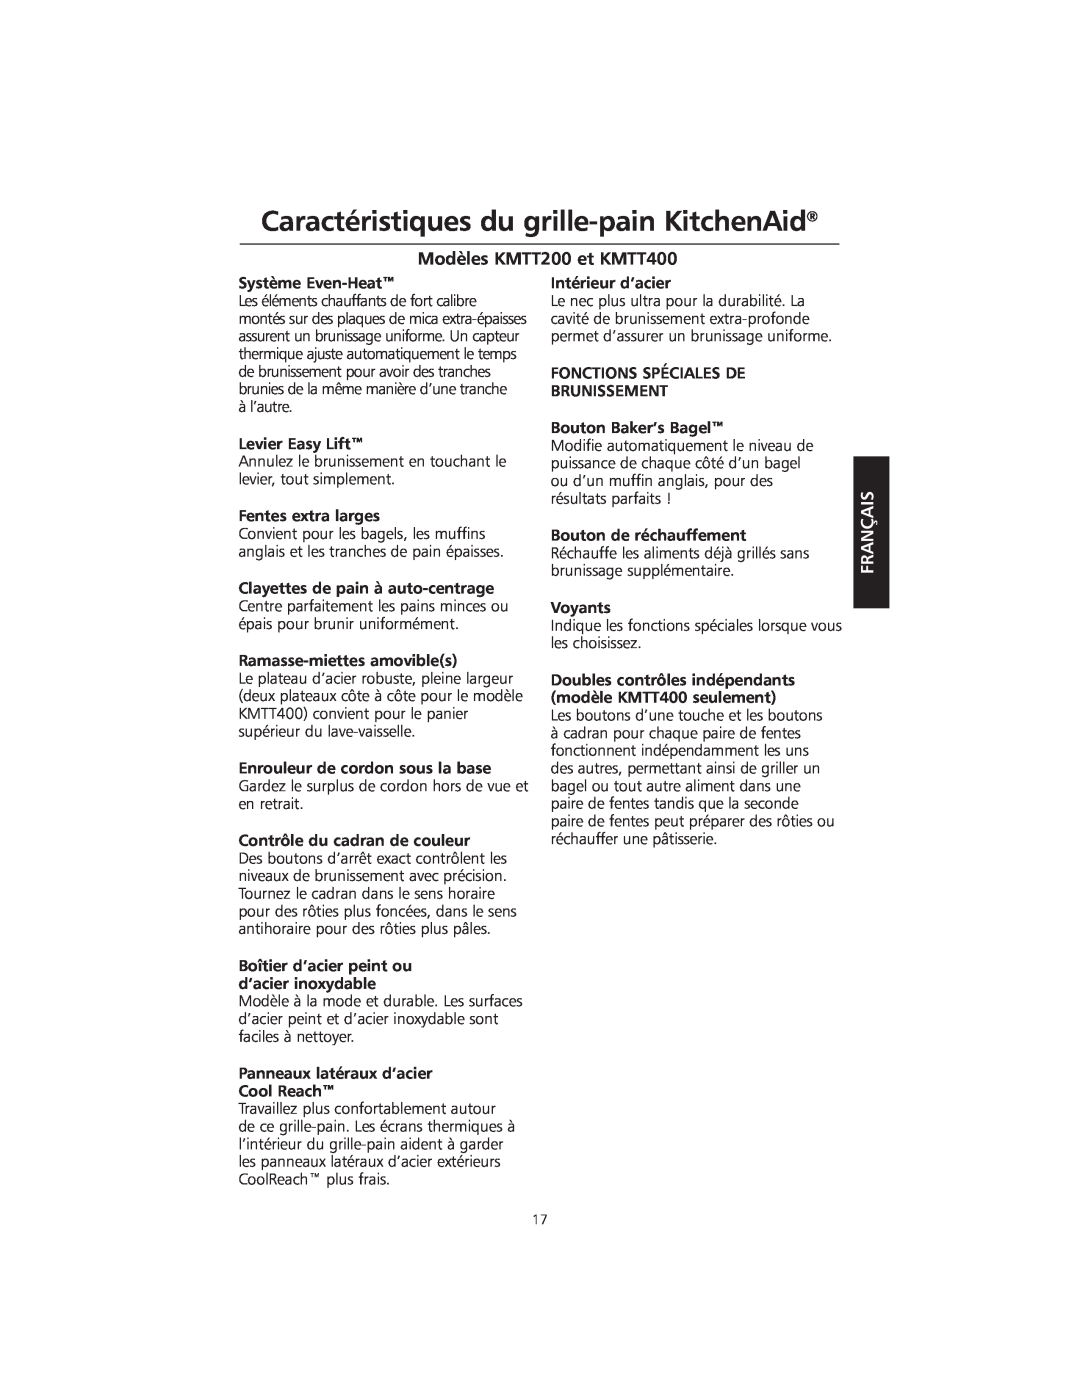 KitchenAid manual Caractéristiques du grille-pain KitchenAid, Modèles KMTT200 et KMTT400, Français 